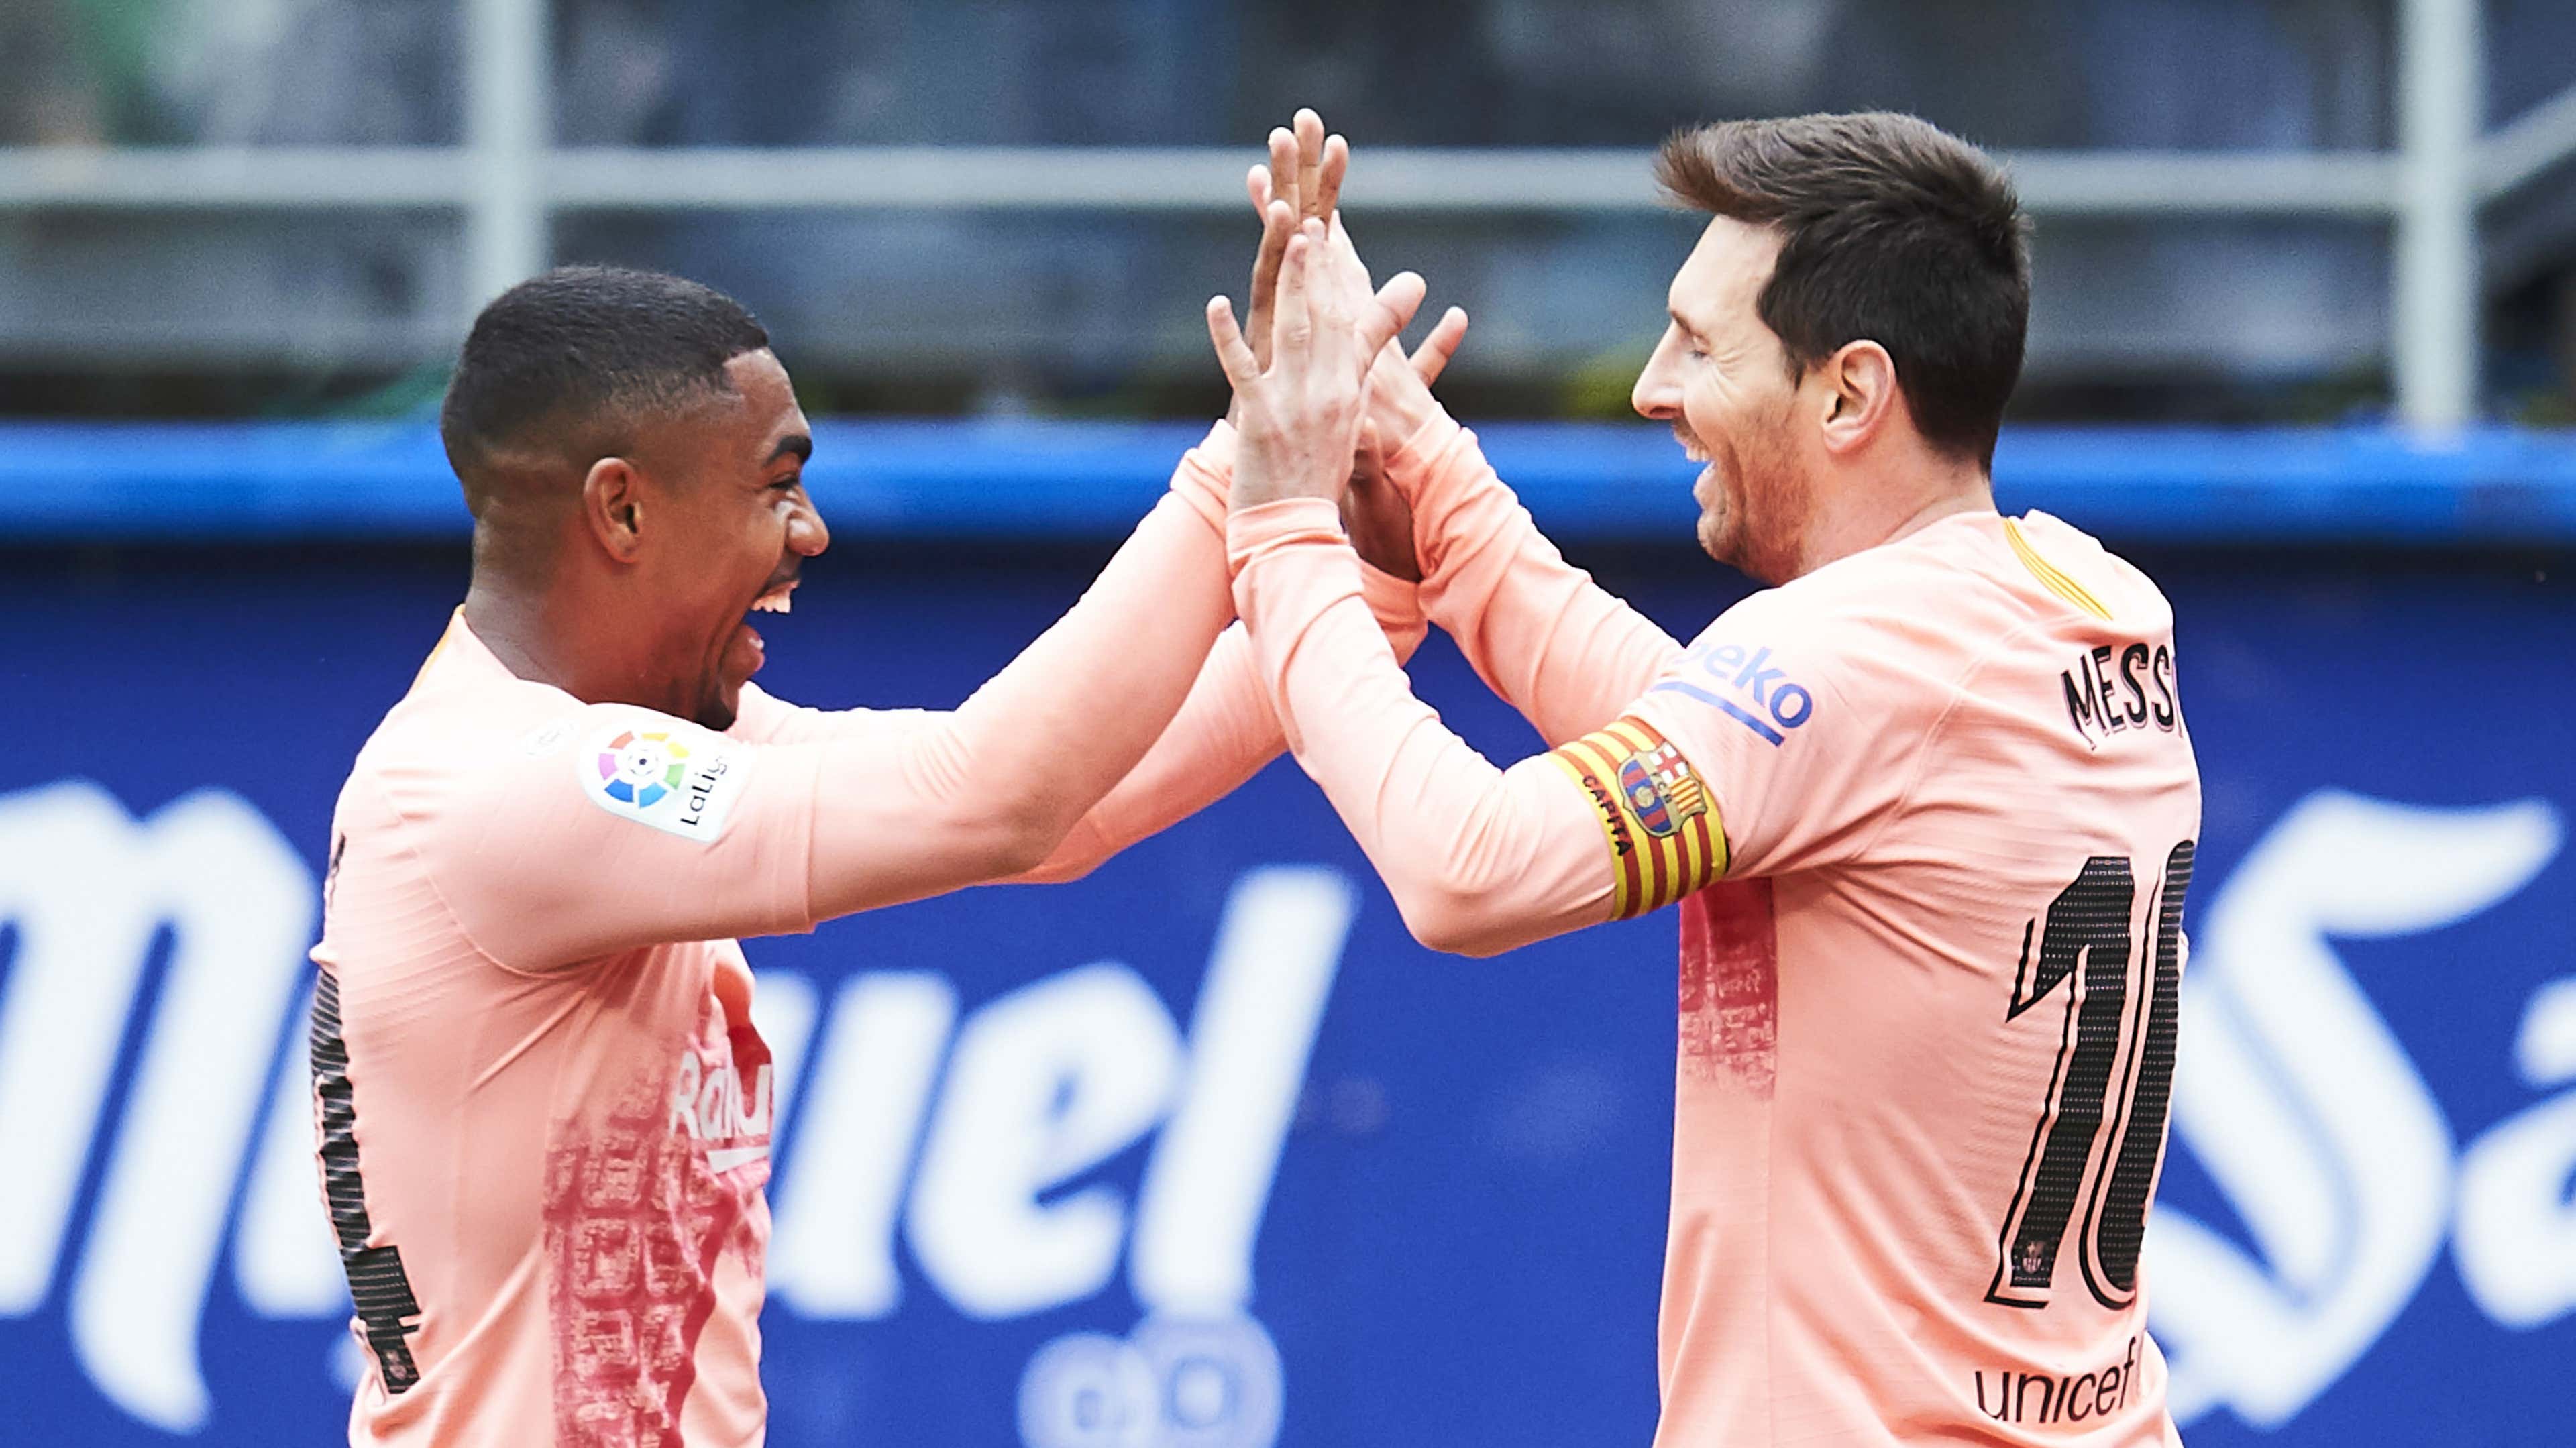 Malcom Messi Barcelona 20 08 2019